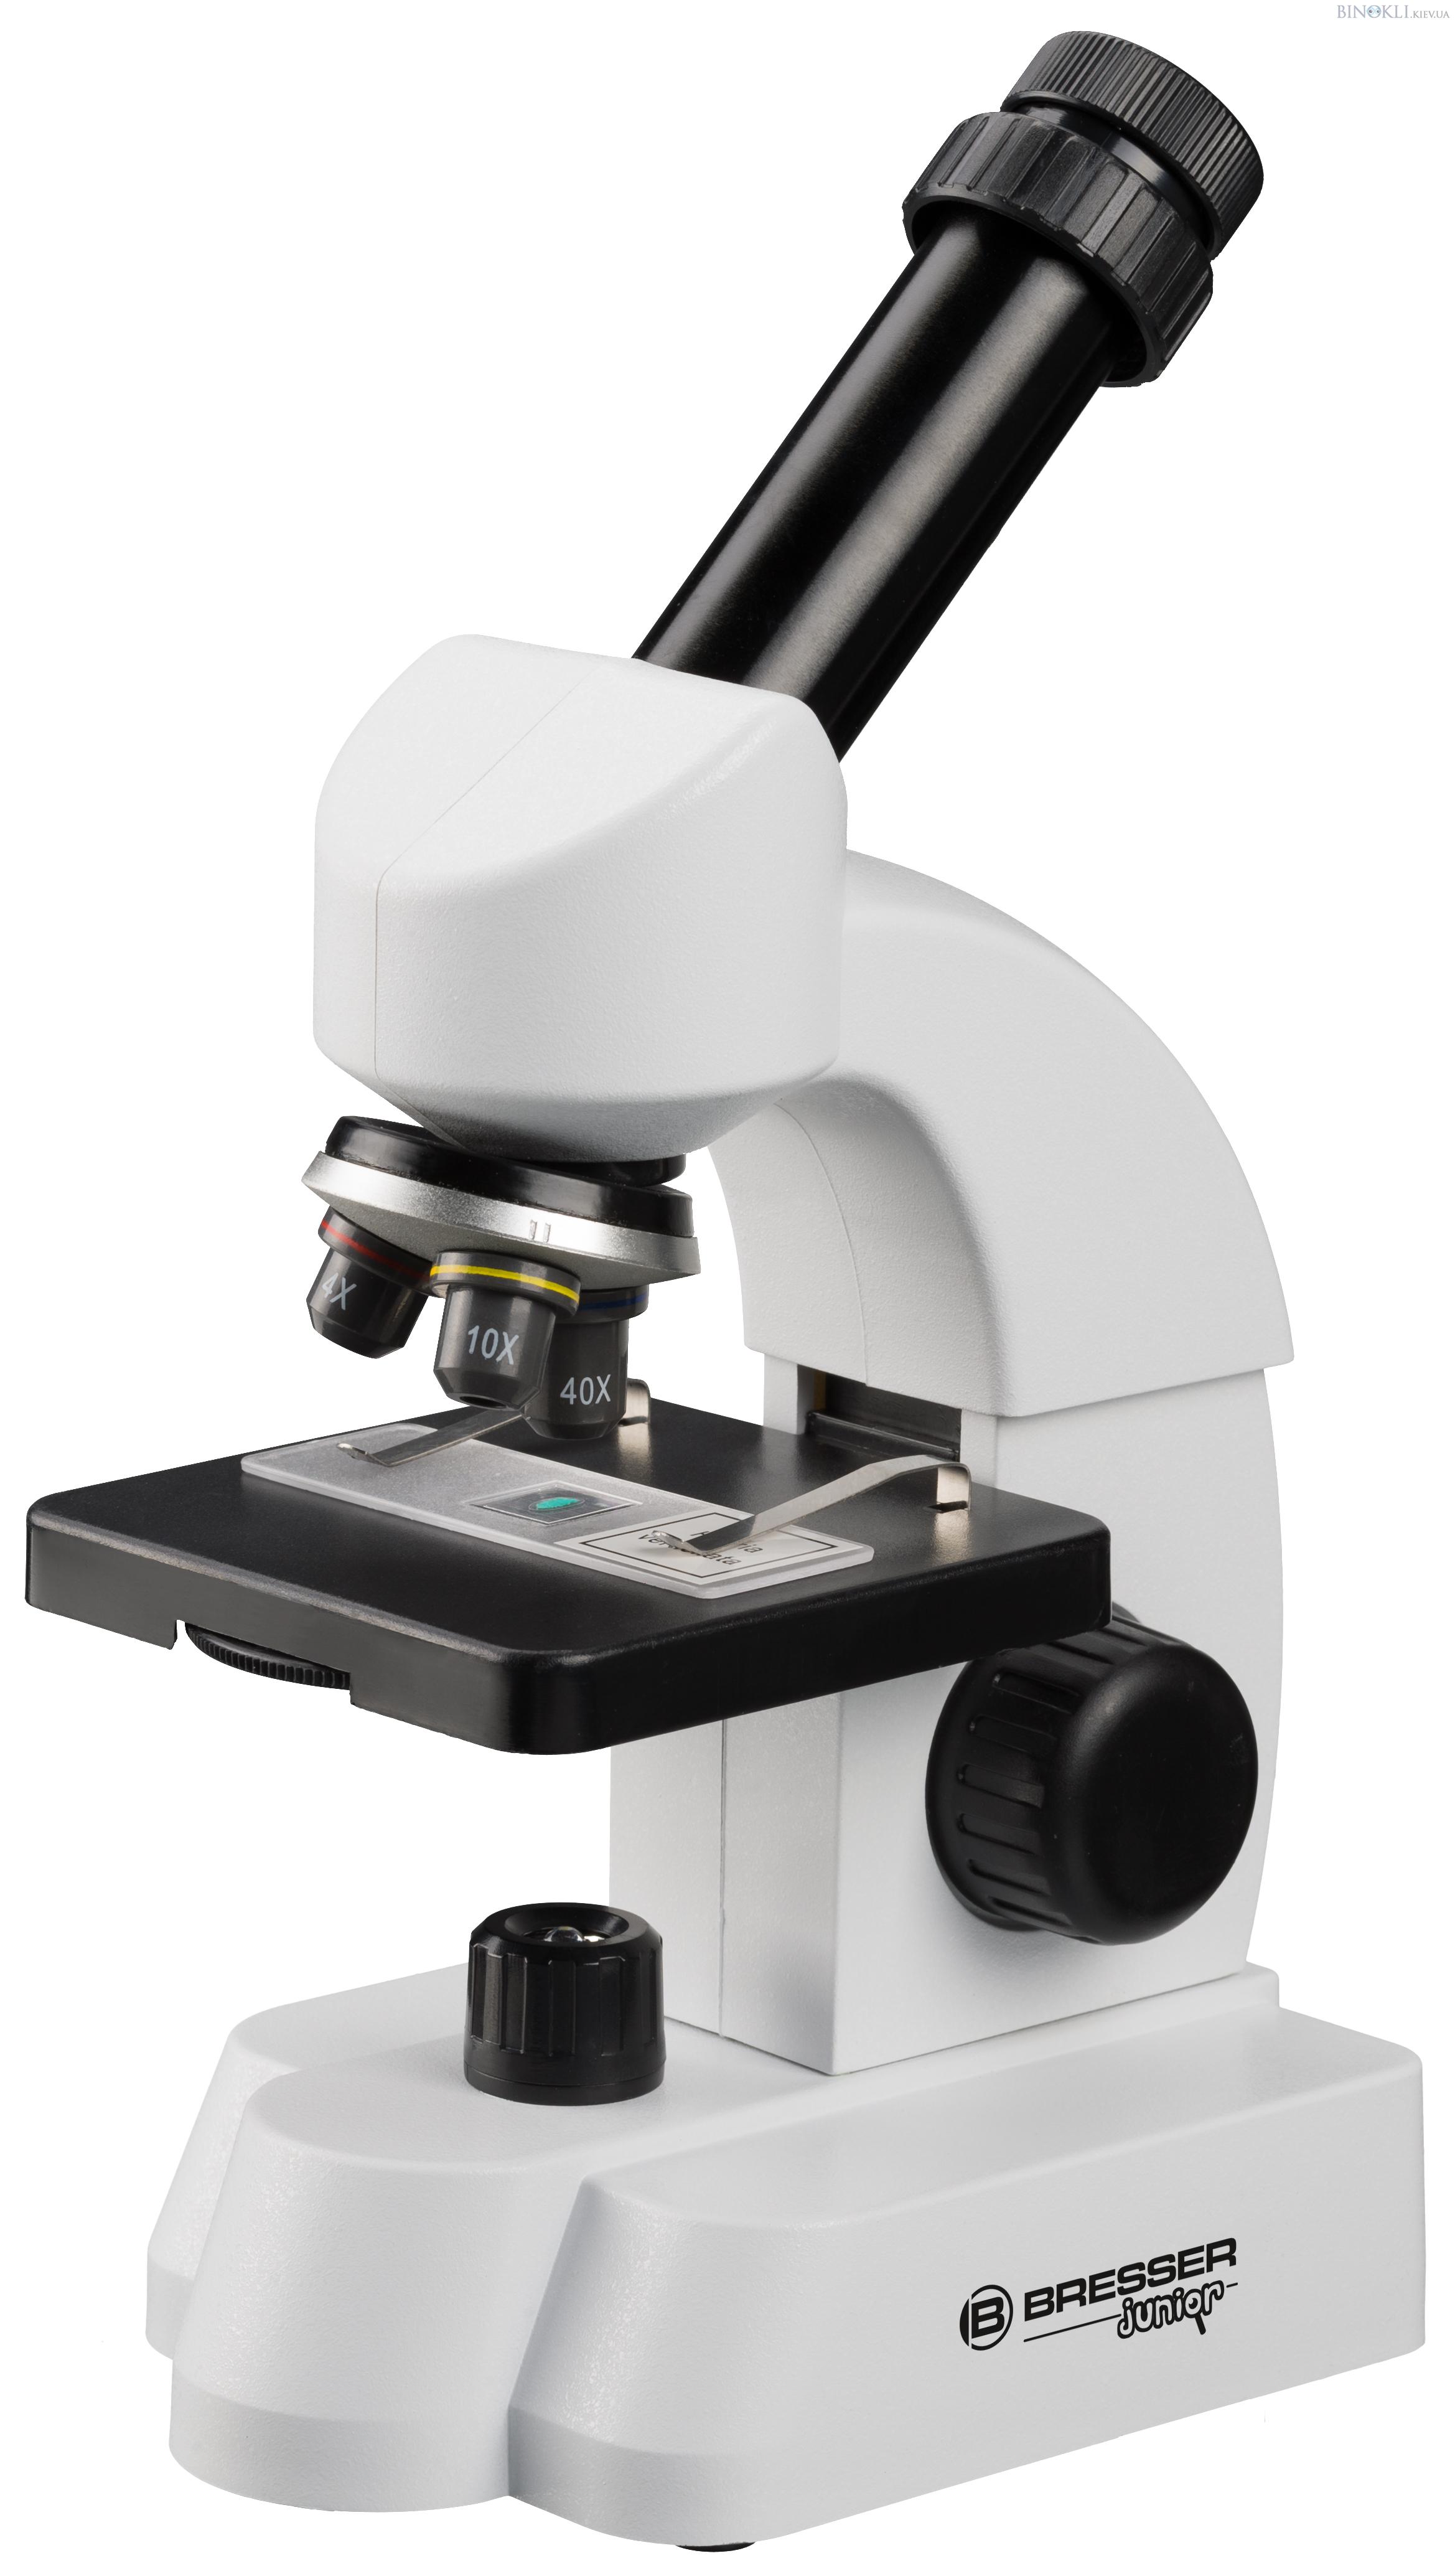 Биологический микроскоп Bresser Junior 40x-640x c адаптером для смартфона